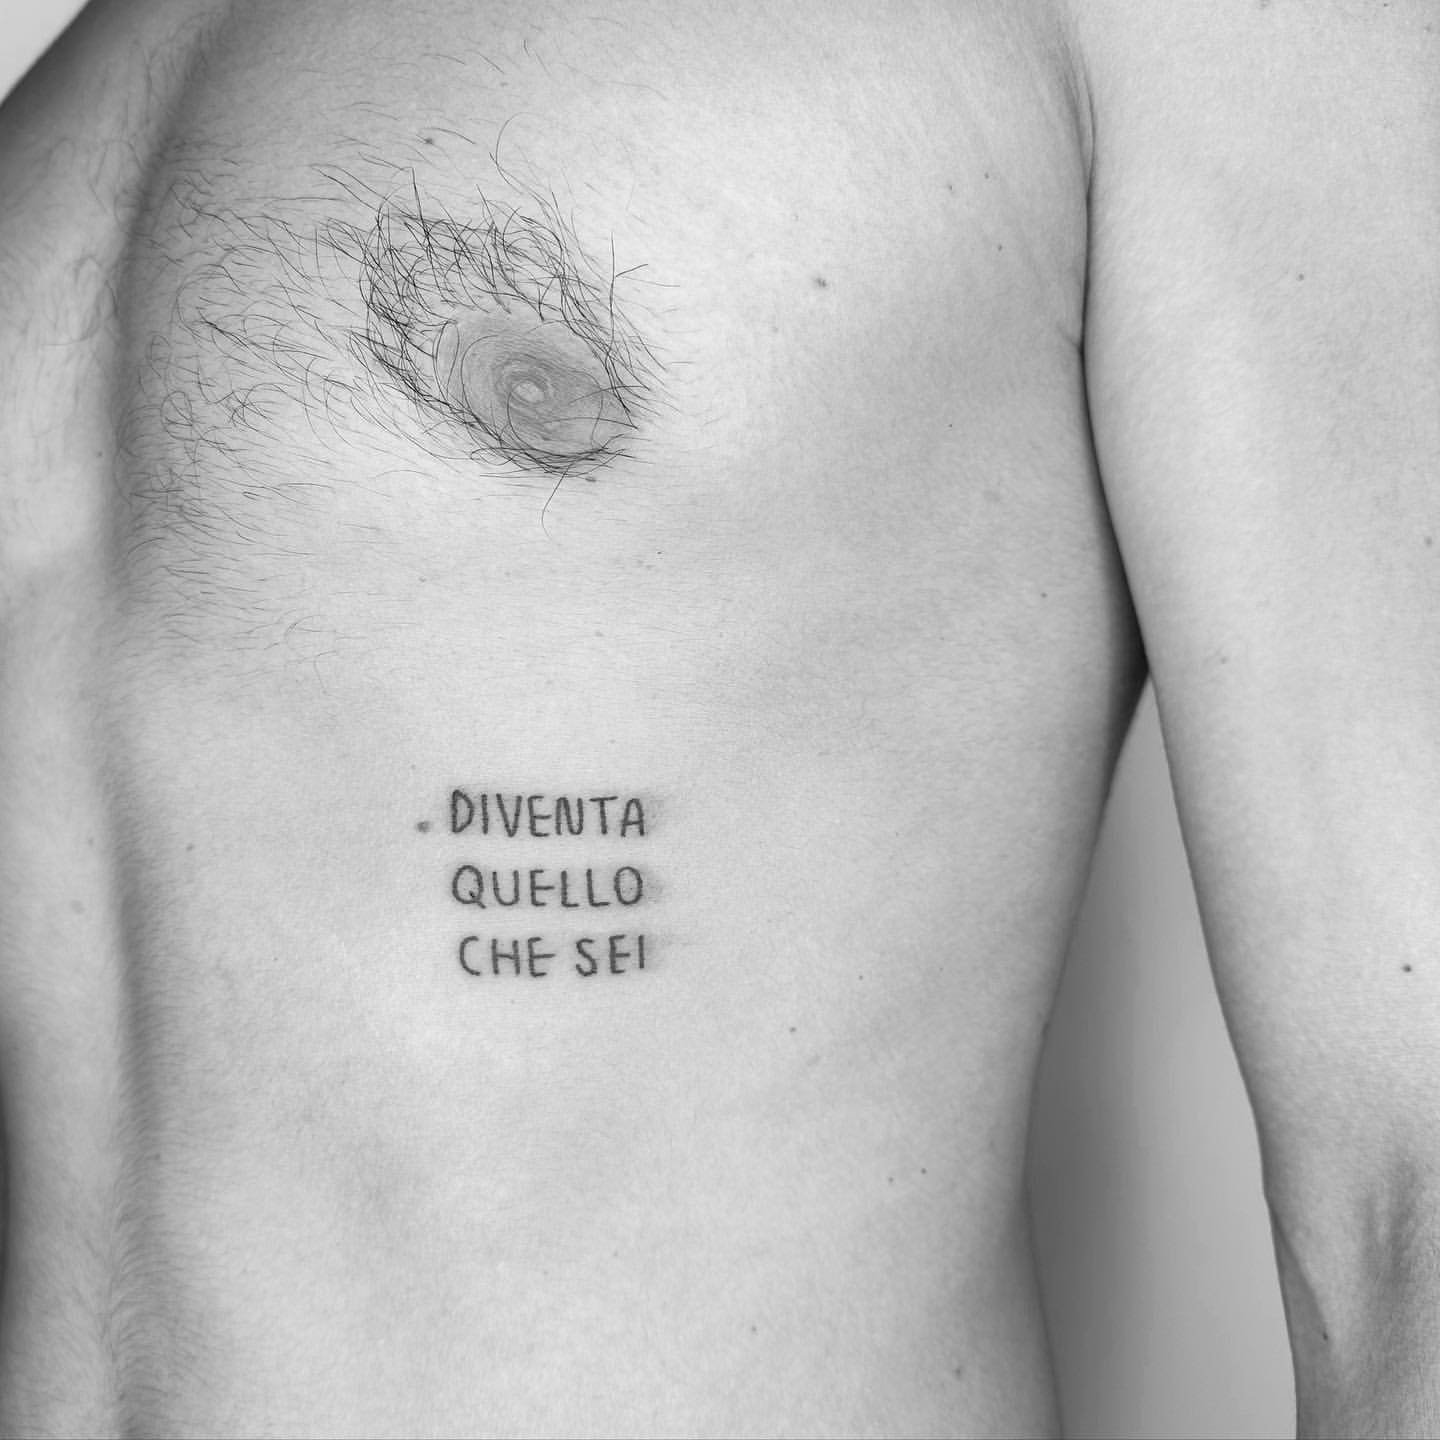 Cursive Tattoo Lettering - Best Tattoo Ideas Gallery